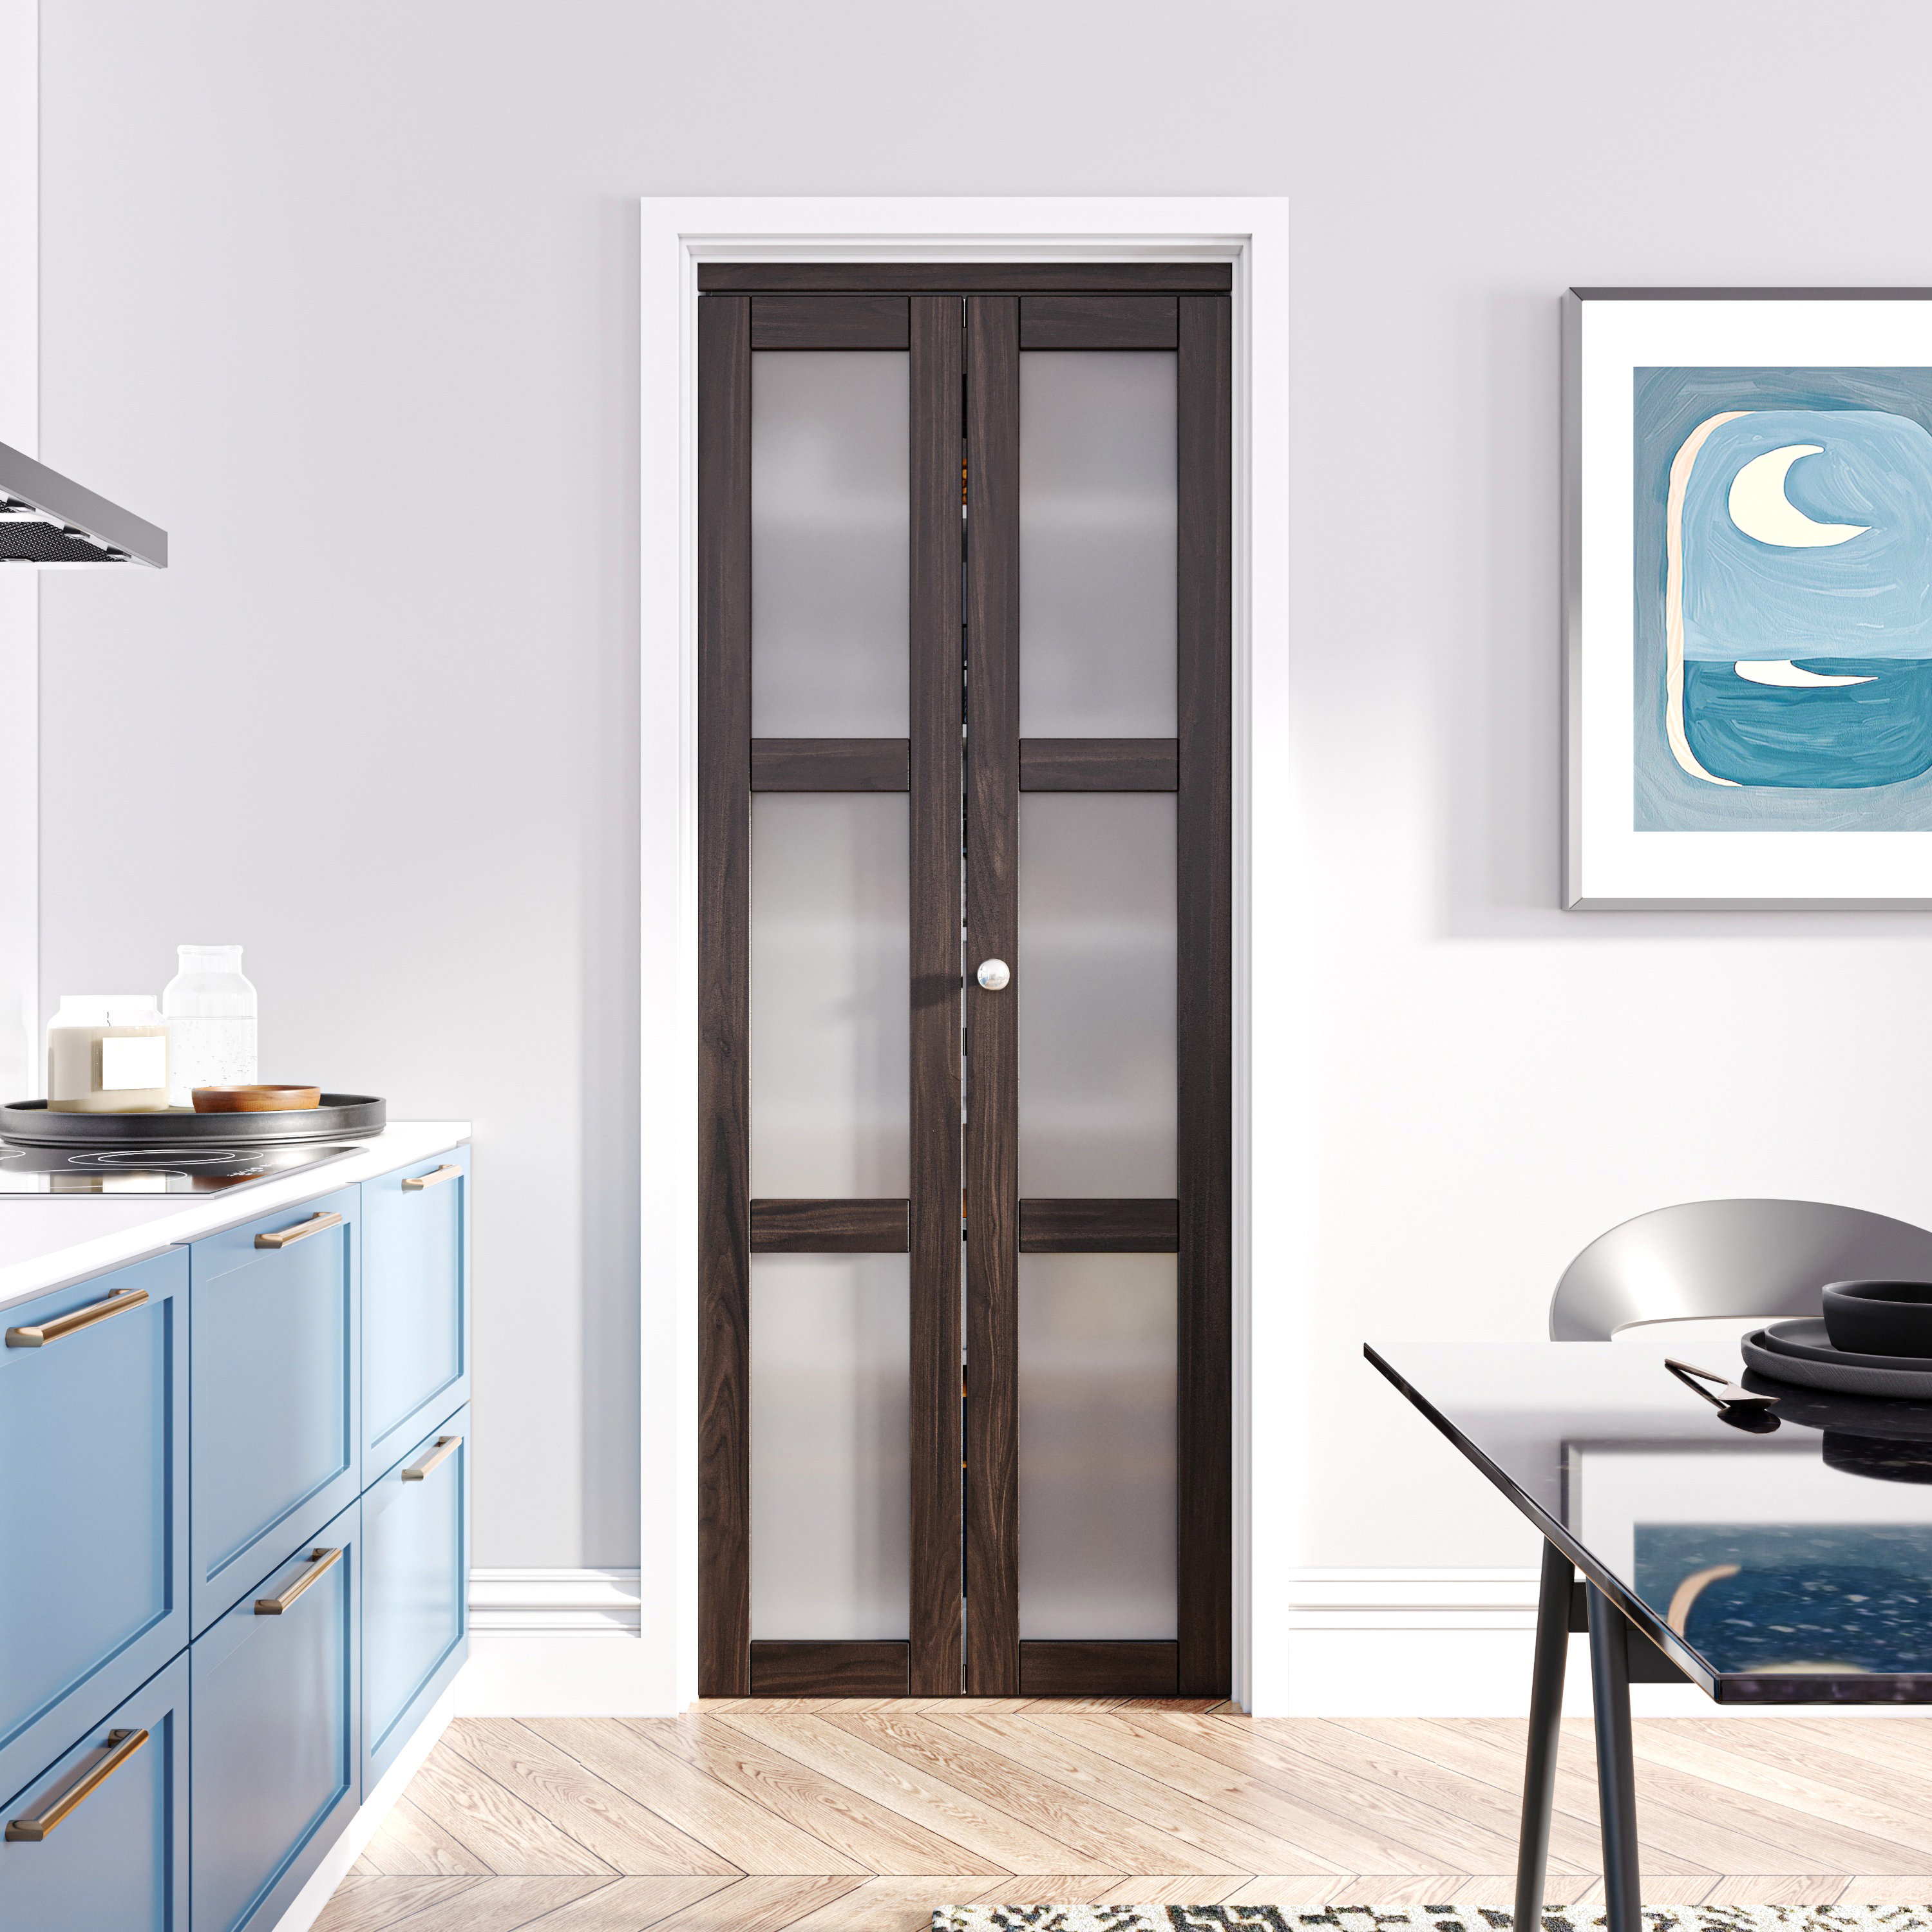 HOZONE Solid with Wood Installation Color Hardware | Door Manufactured Door Glass Ancient Wayfair 3-Lite Bi-Fold Wood